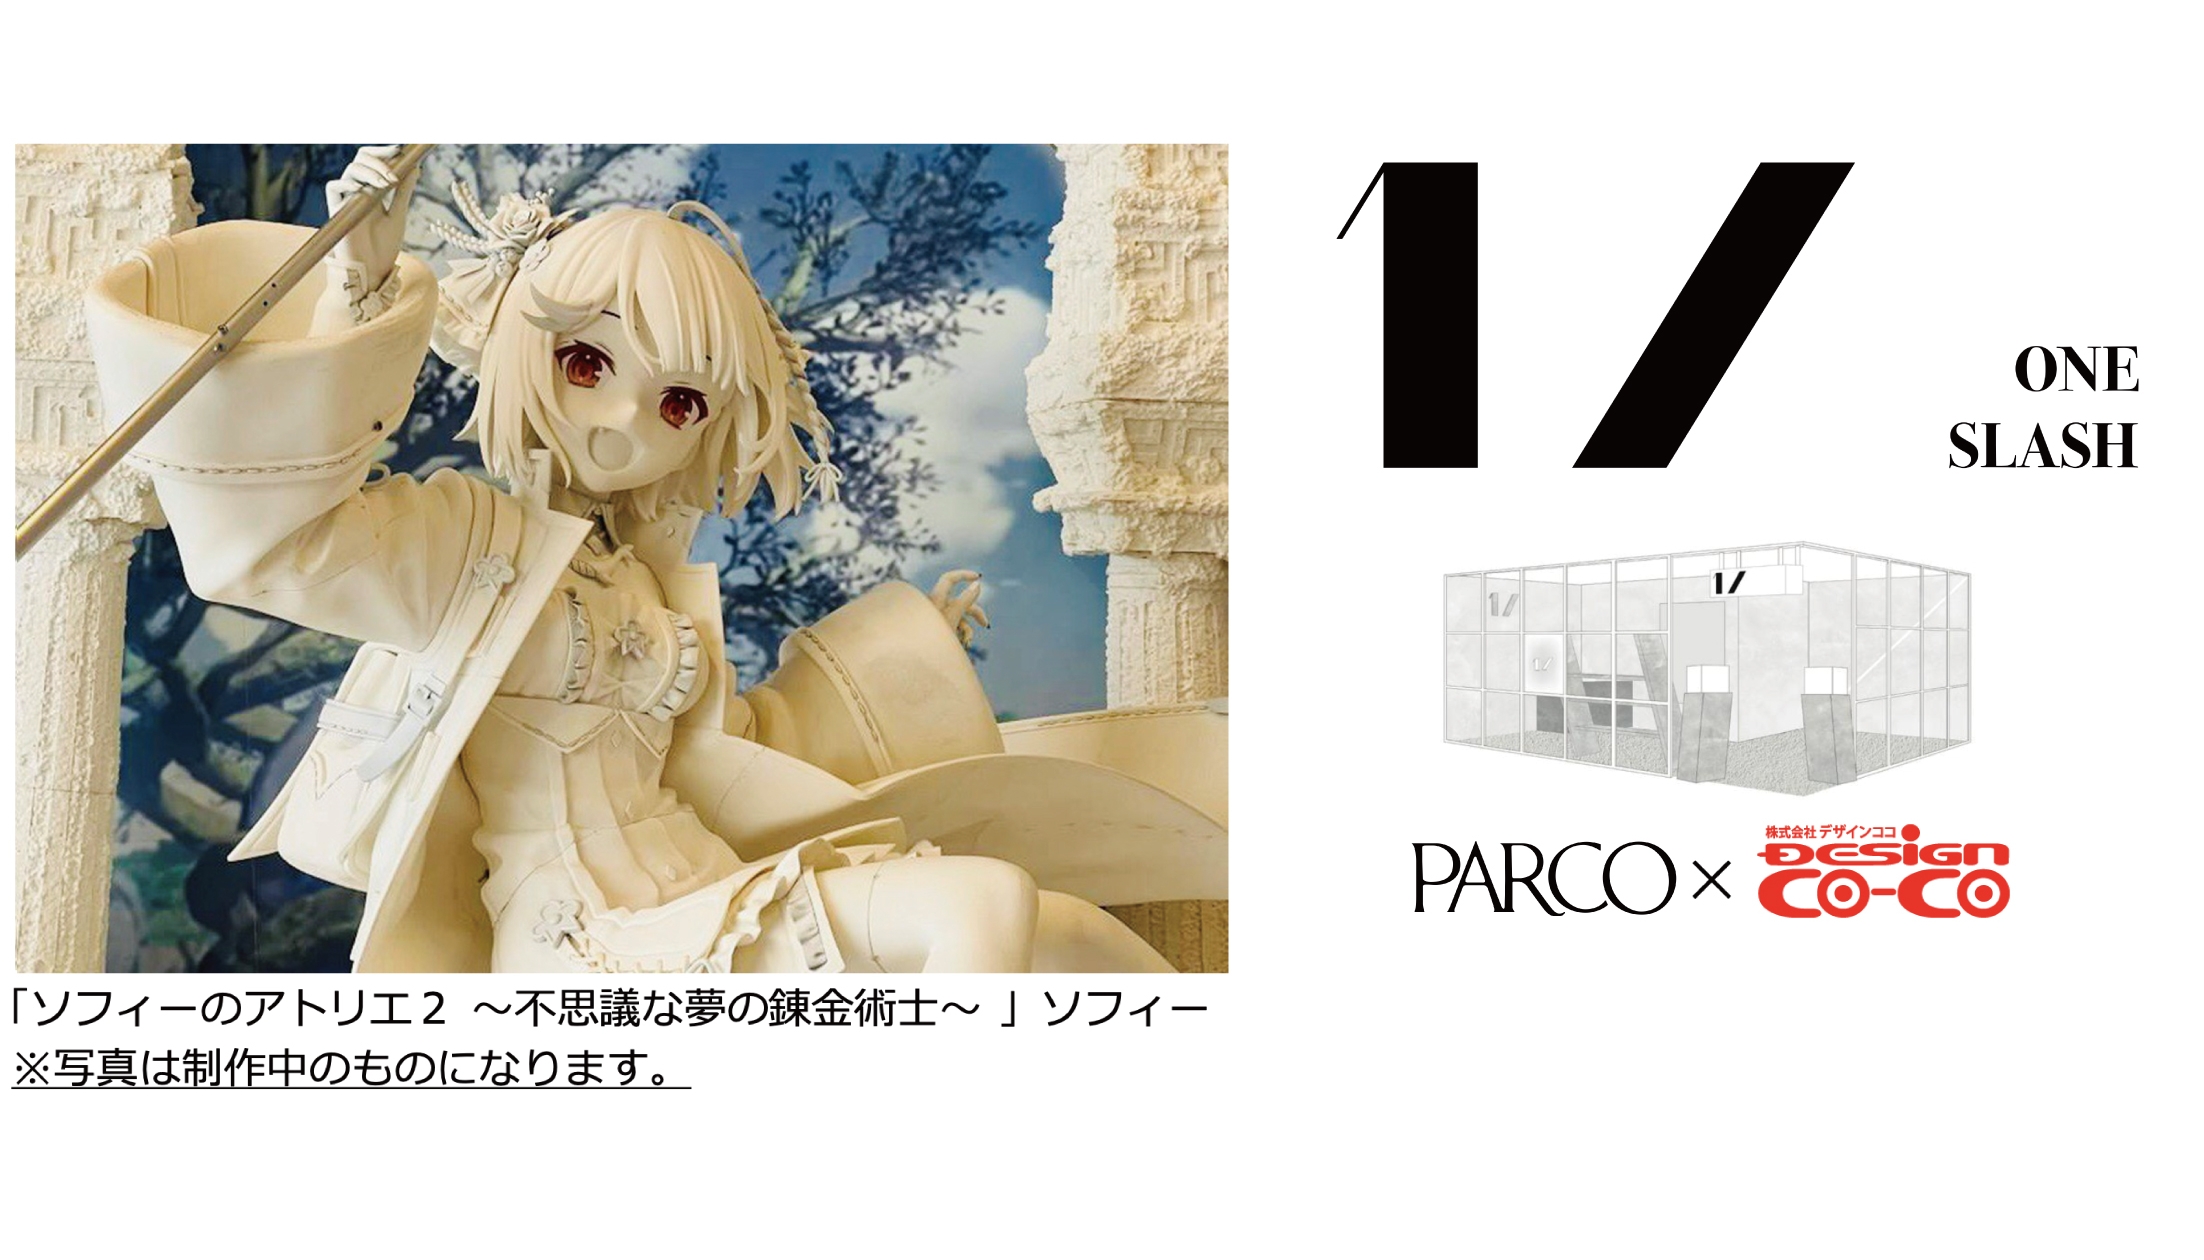 渋谷PARCOアートフィギュアギャラリー 「1/ ONE SLASH」オープン、第一 ...